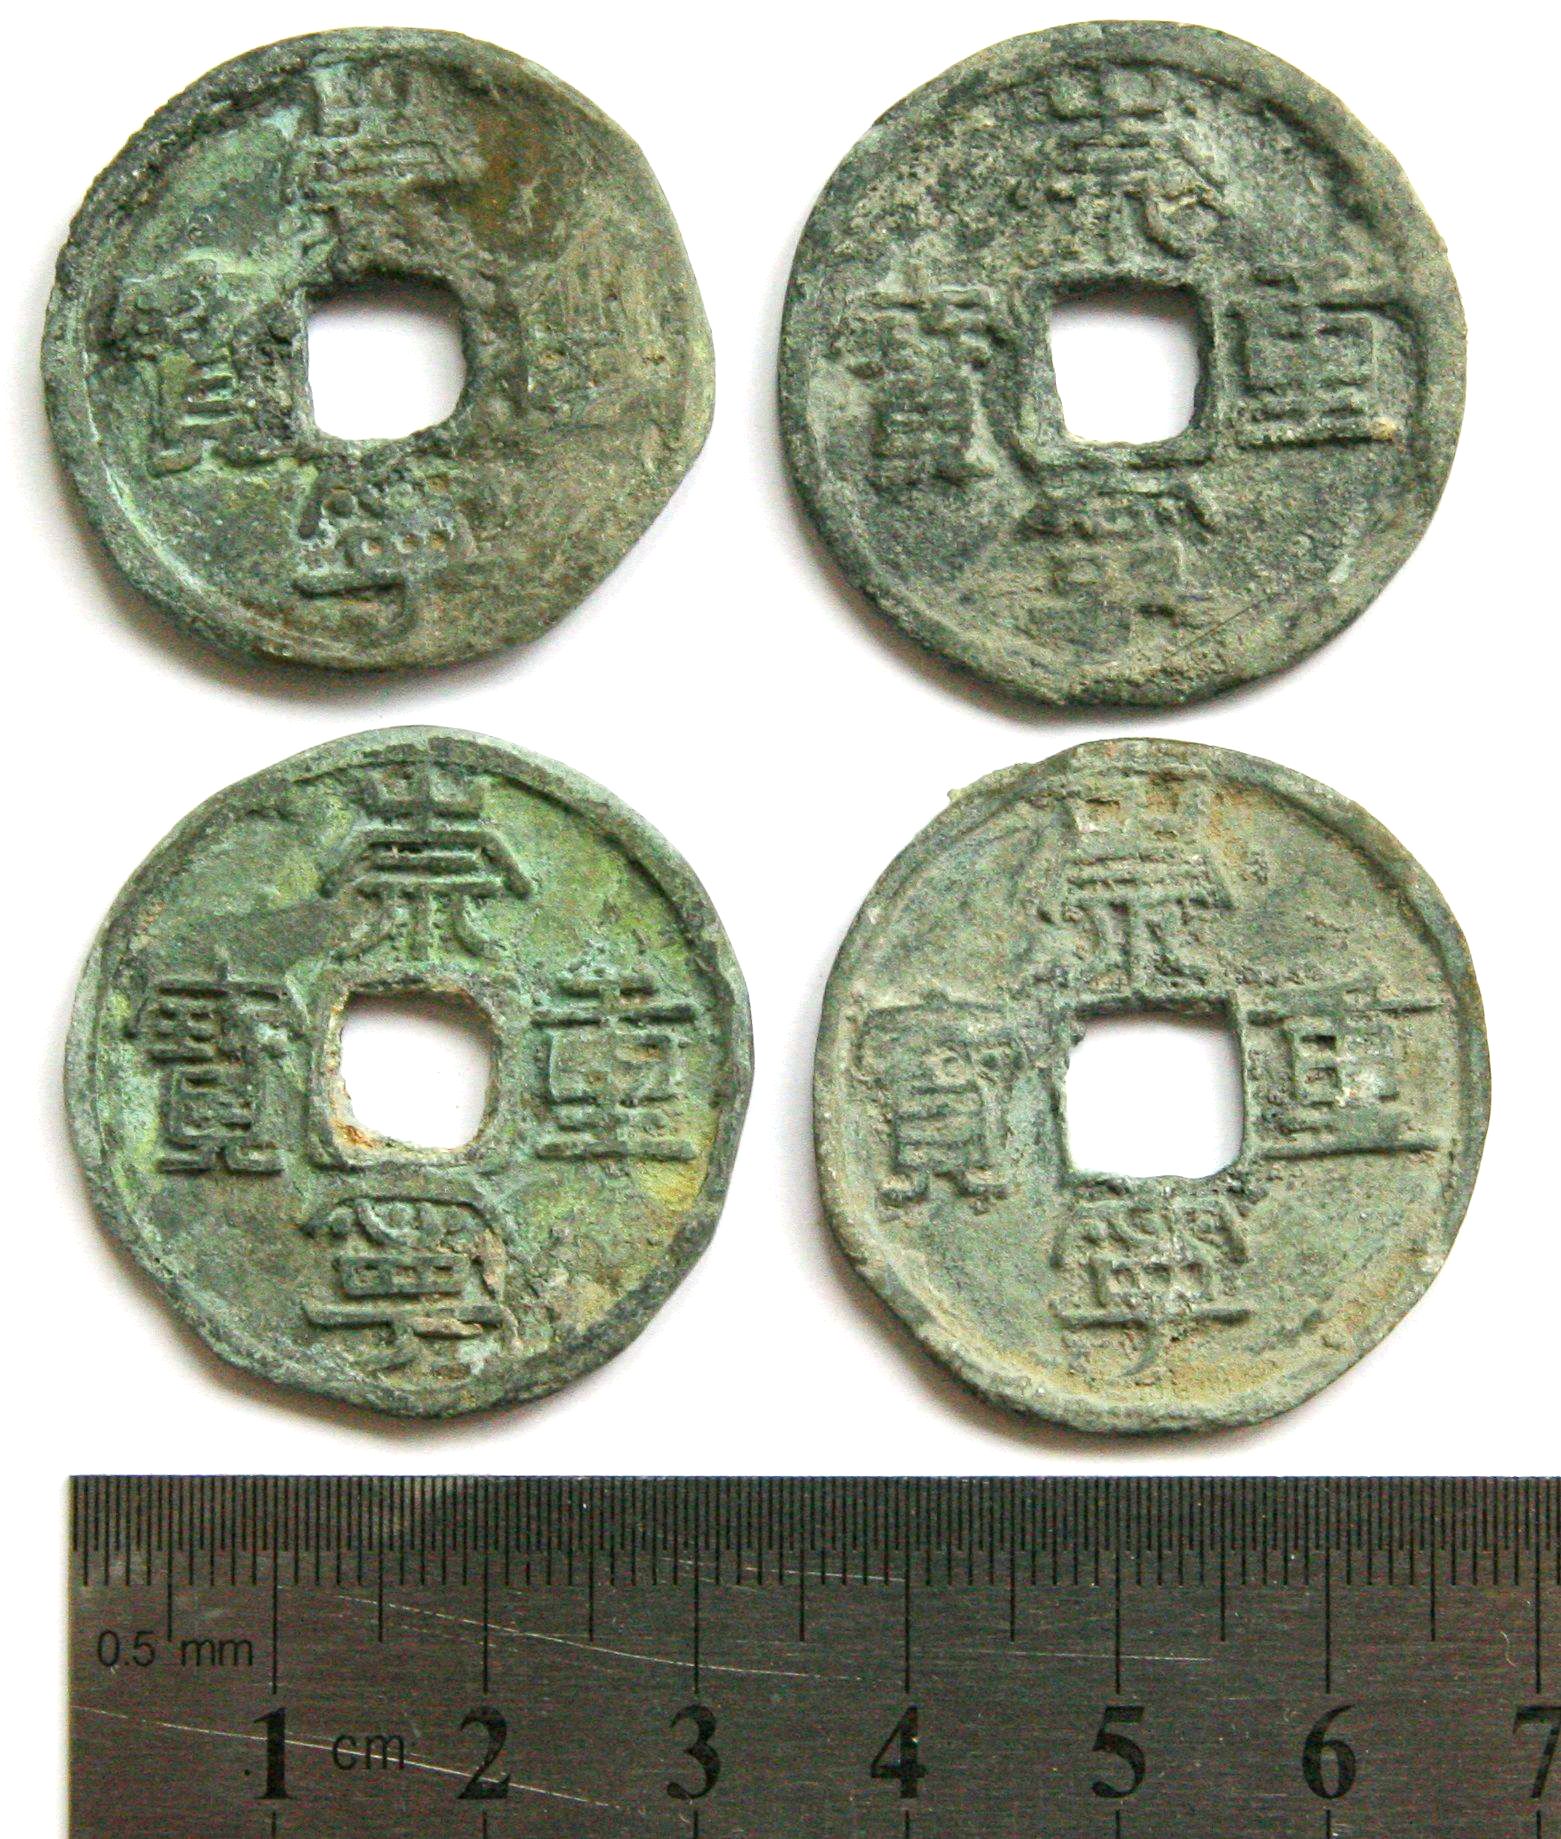 K2817, Chong-Ning Zhong-Bao 10-cash Large Coins 4 pcs Type II, China AD 1102